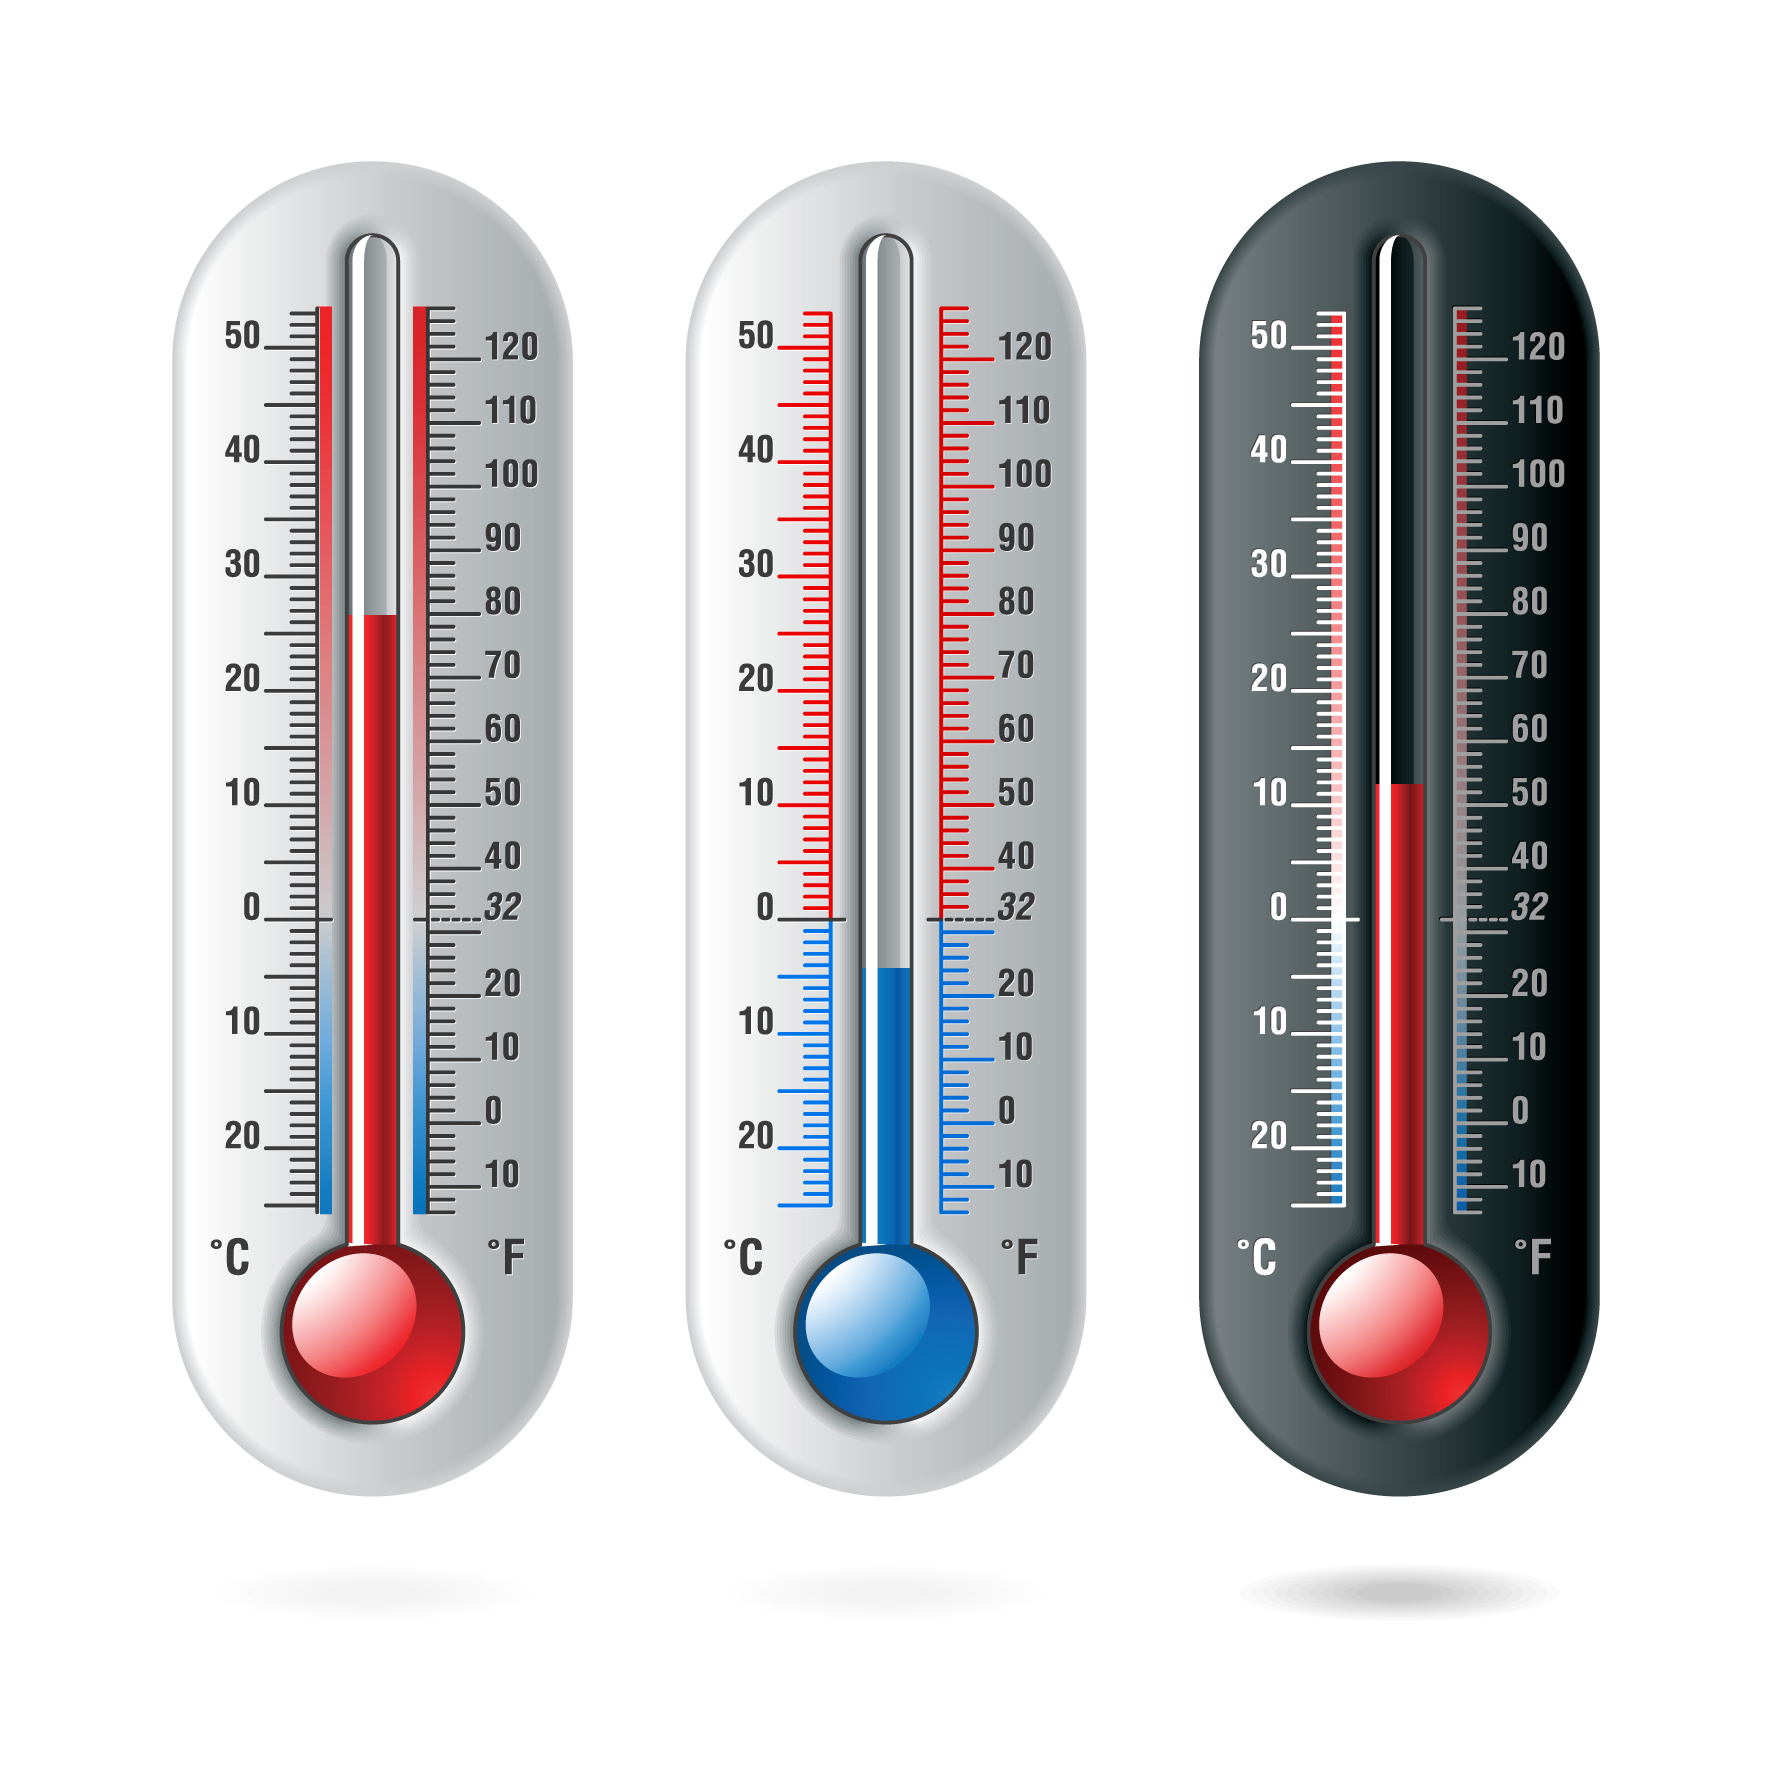 ANM: Duminică temperaturile vor ajunge până 30 de grade Celsius, în mai multe regiuni din ţară